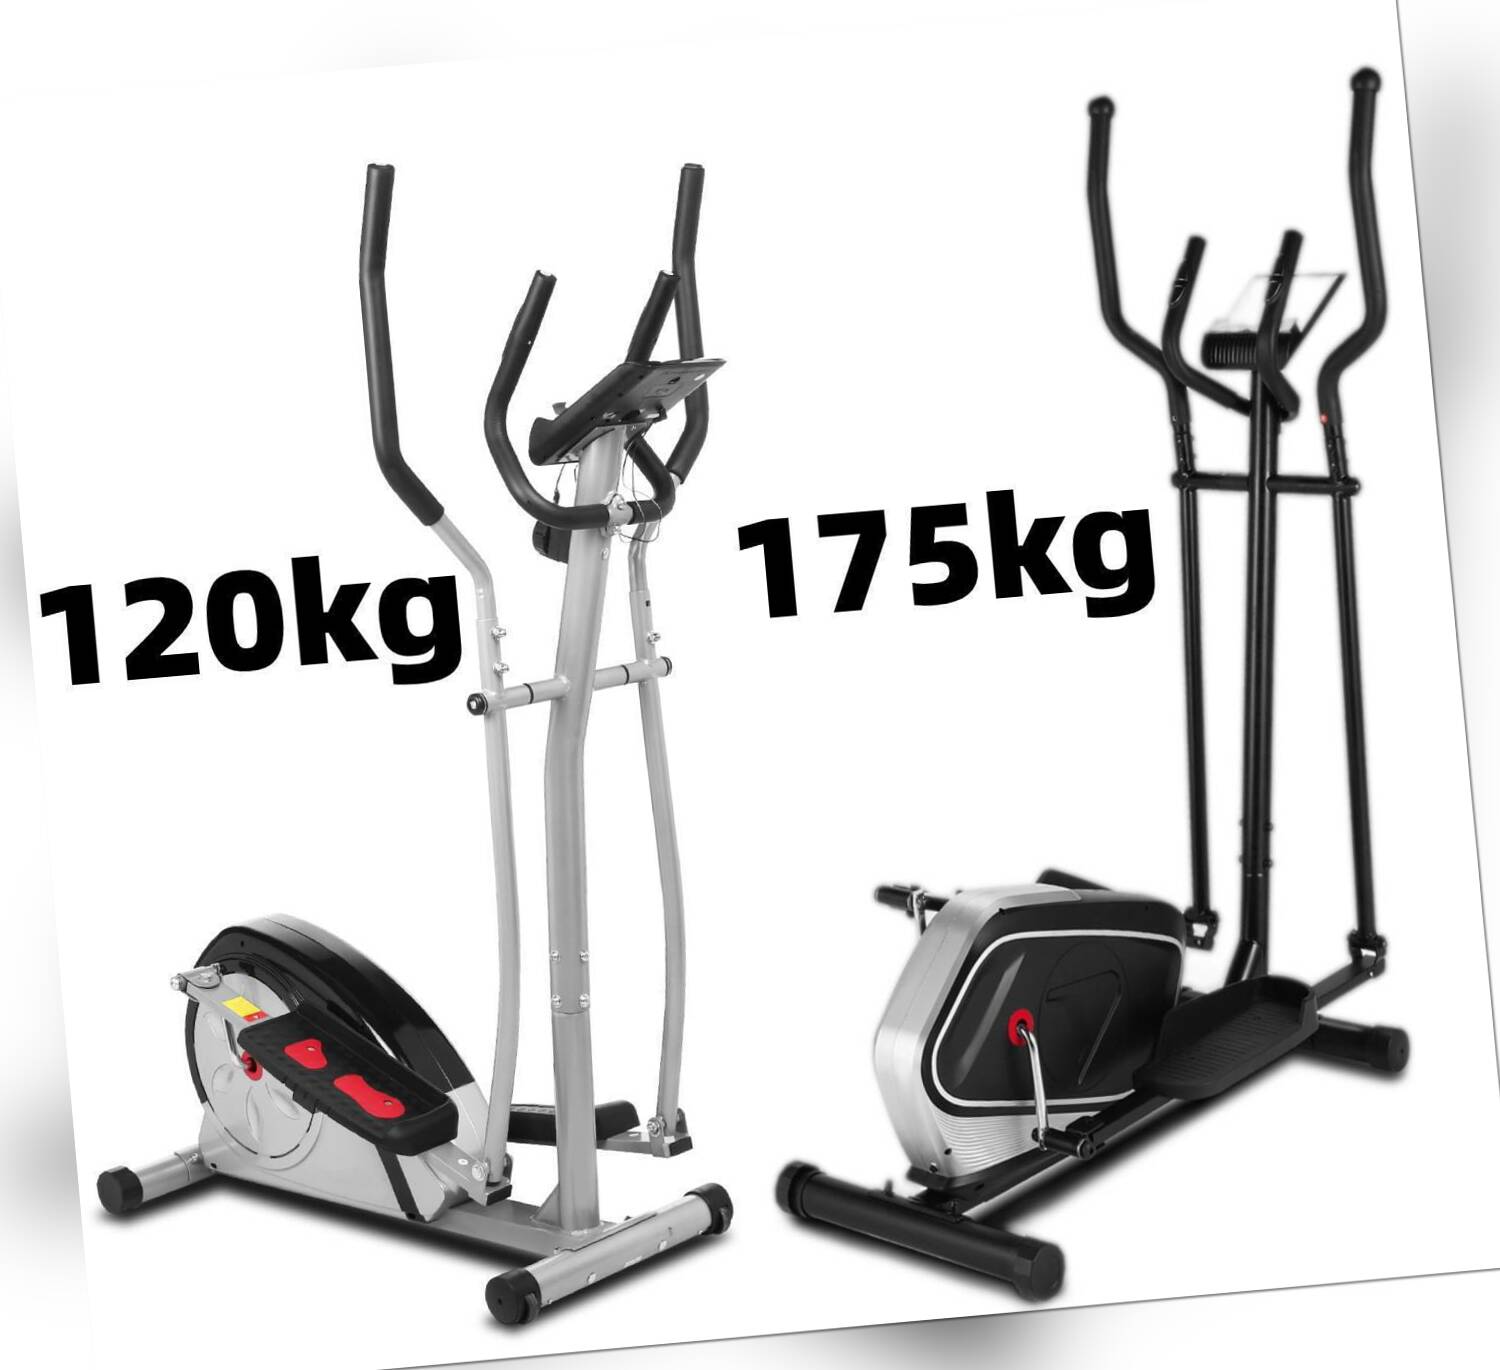 Crosstrainer Fitness Heimtrainer Ellipsentrainer Stepper mit LCD bis 120kg/175kg